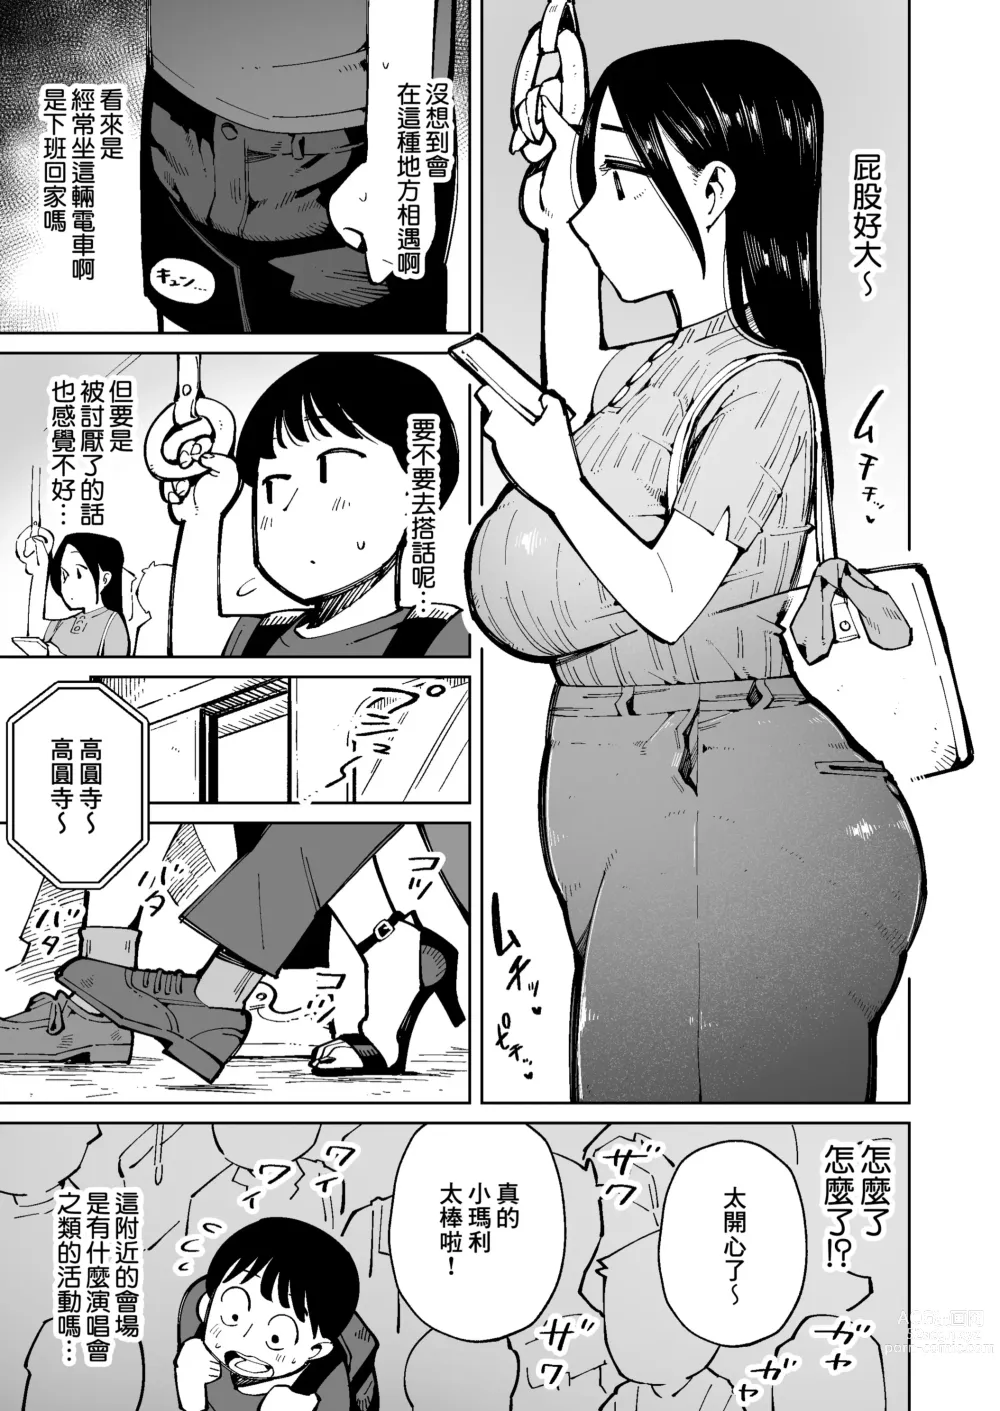 Page 8 of doujinshi 在電車上對大屁股太太進行癡漢行為時弄到大便失禁了所以就這麼操下去了。